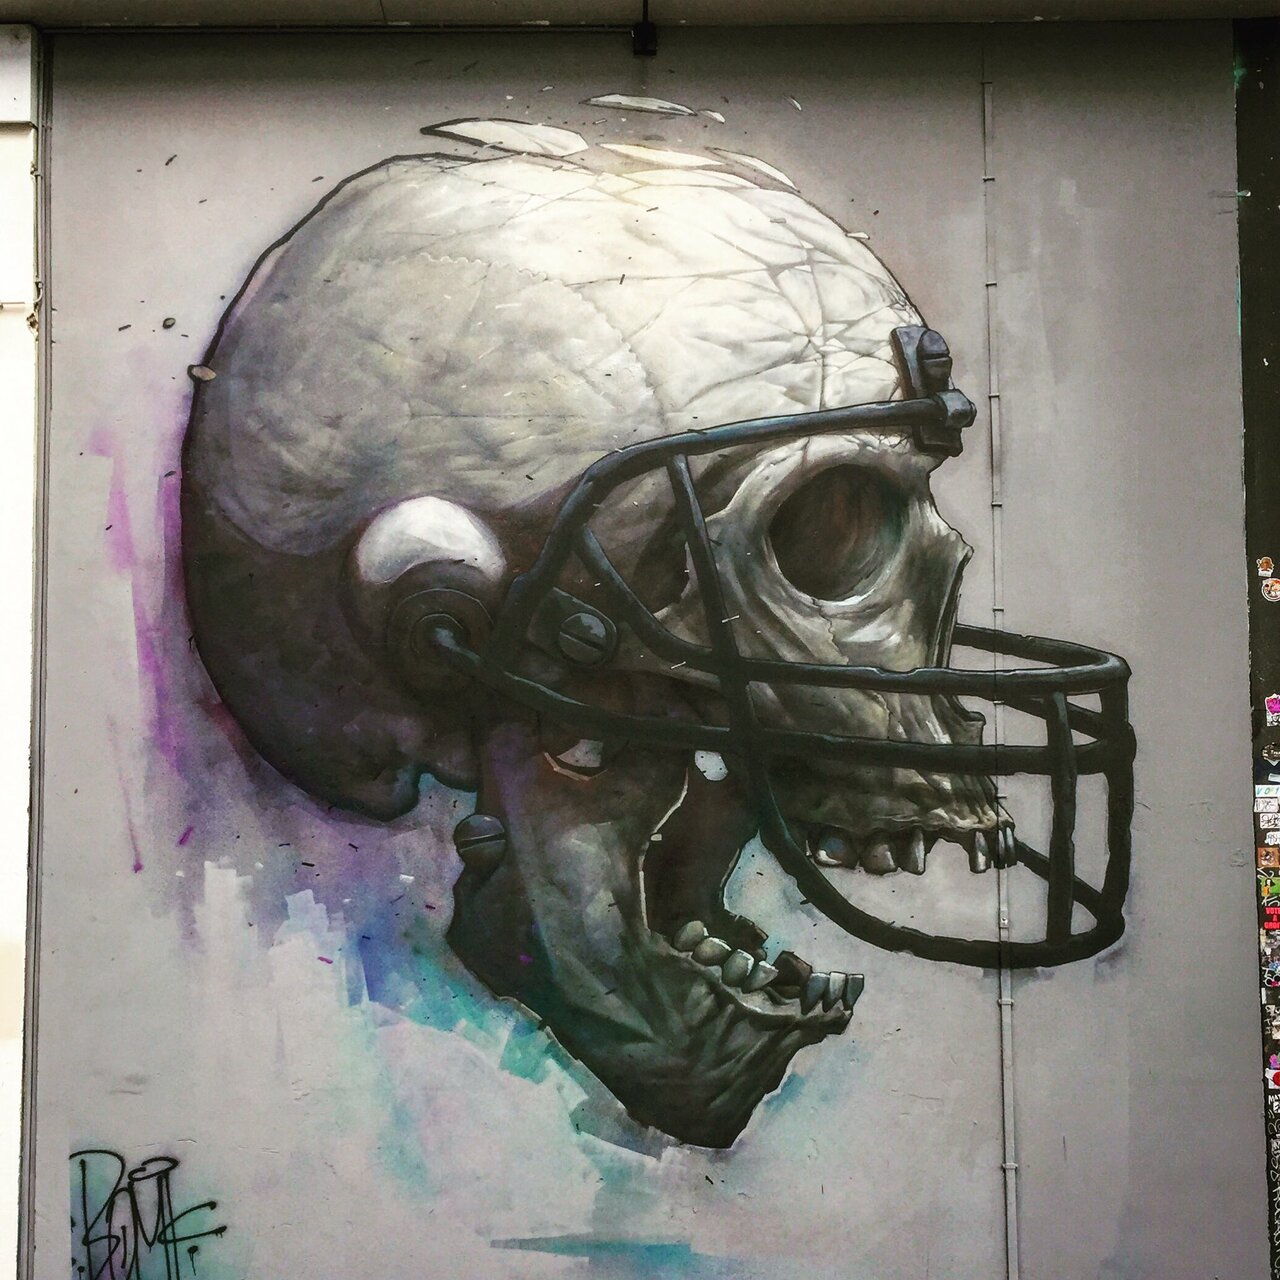 Dat Skull by #bomk #dmv #damentalvaporz #skull #streetart #graffiti #graff #spray #bombing #sprayart #wall https://t.co/0r6FRzbT7E